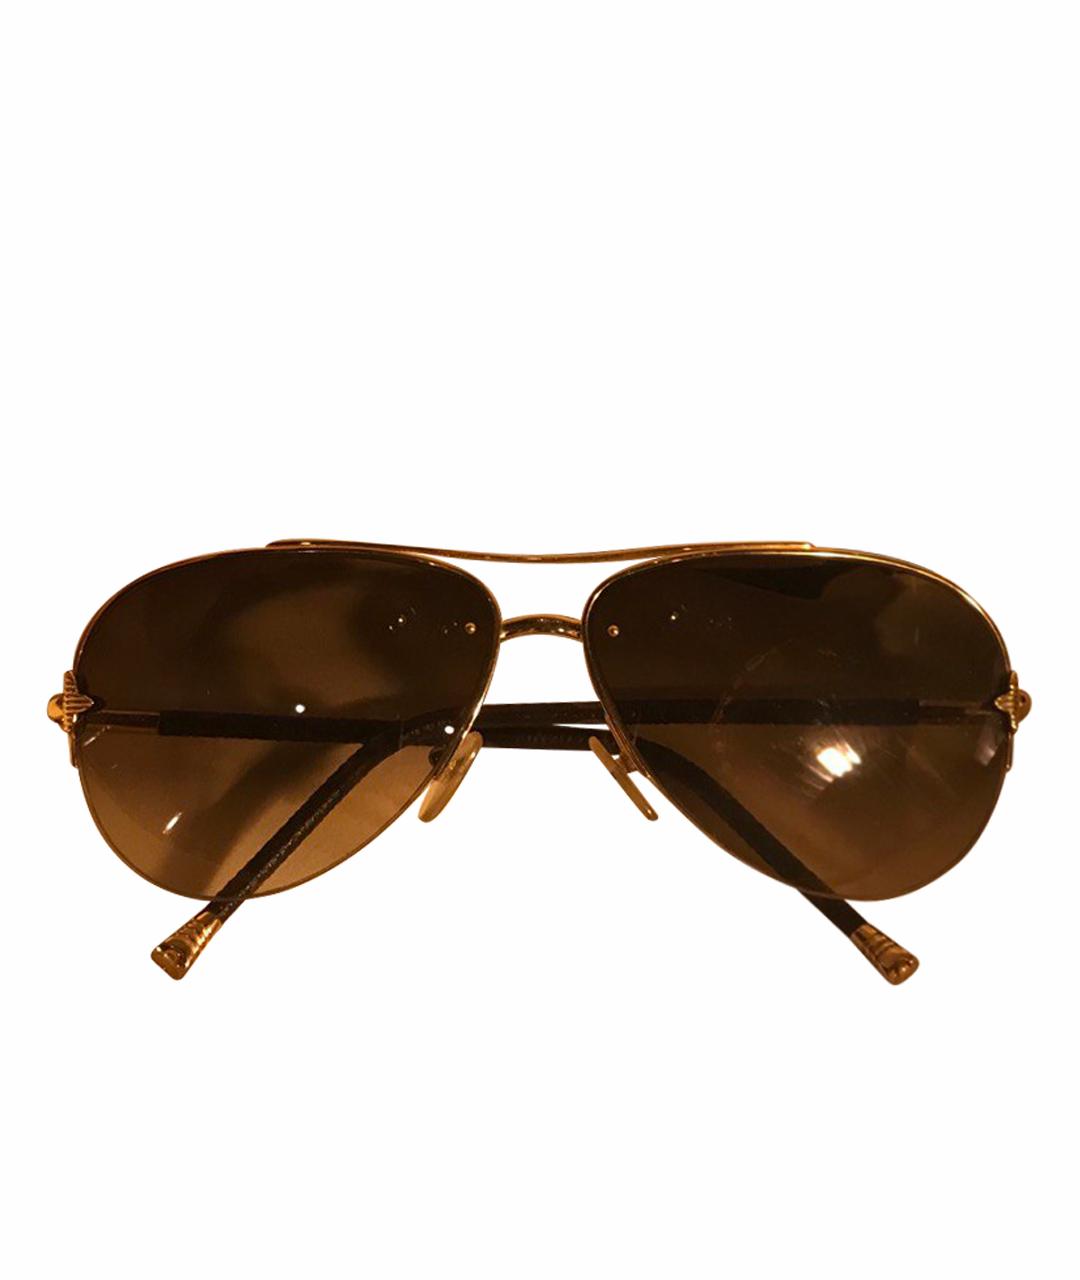 LOUIS VUITTON PRE-OWNED Золотые металлические солнцезащитные очки, фото 1